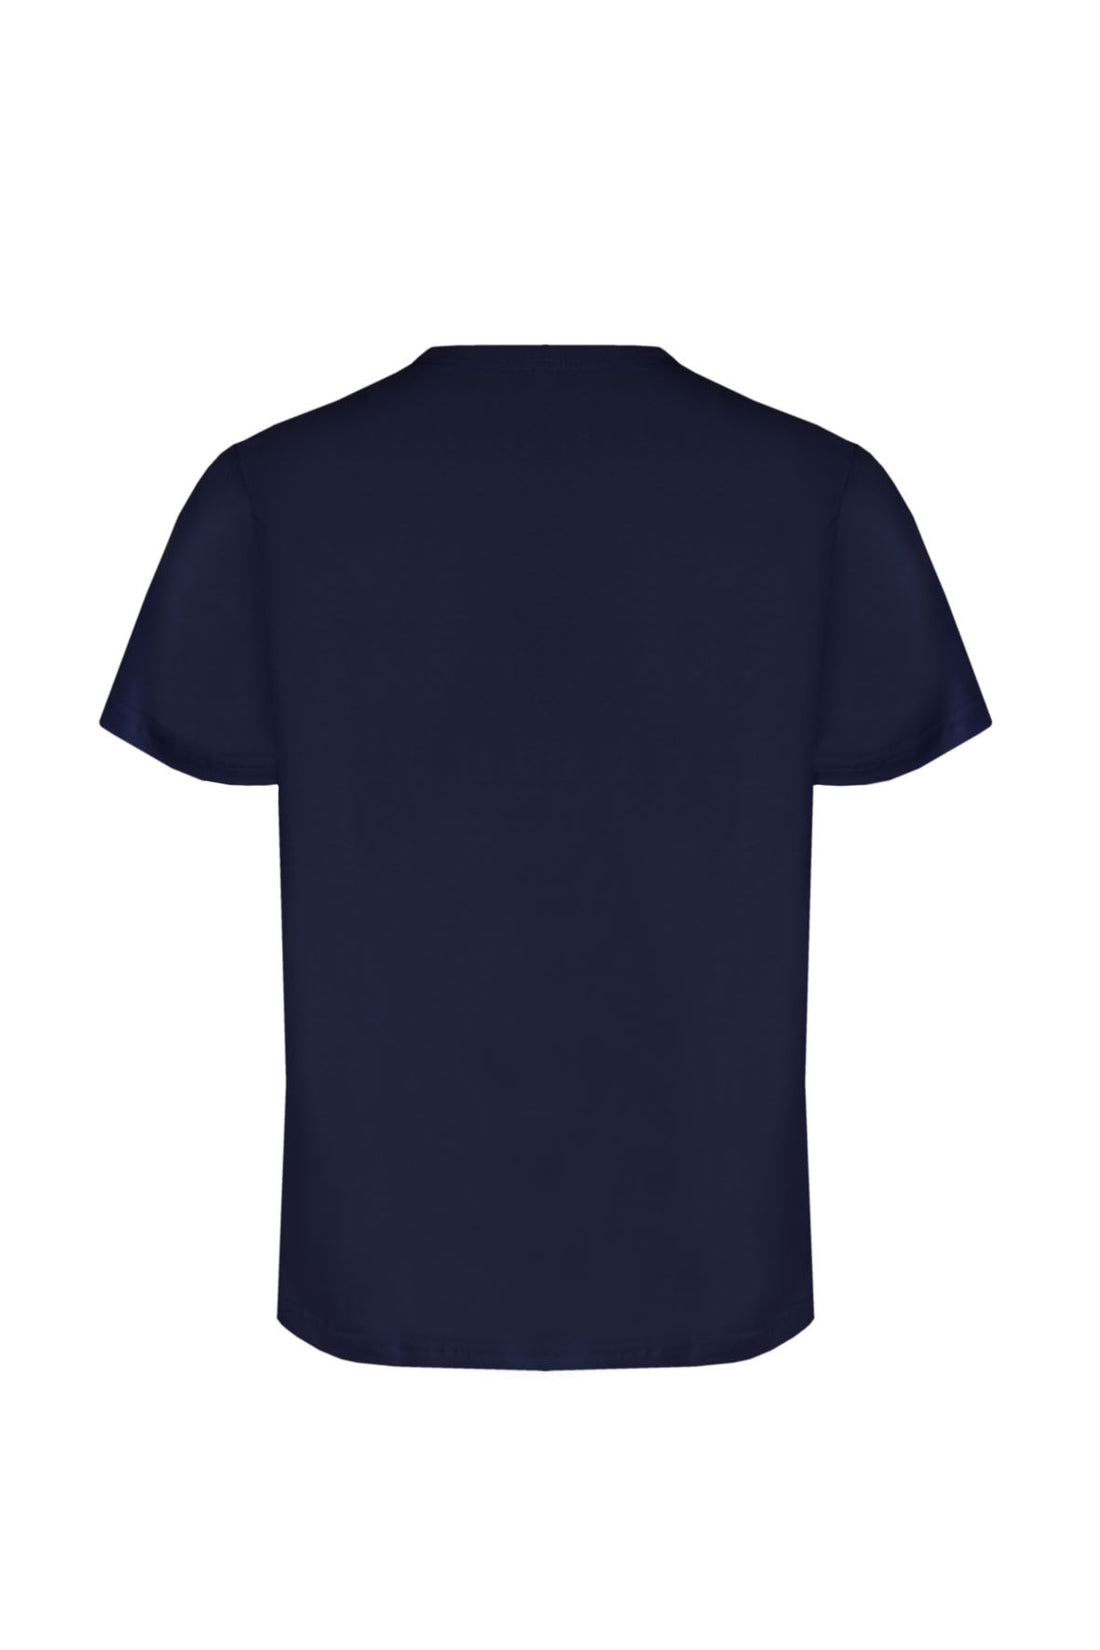 T-Shirt Elastica con Stampa Petto Primo Emporio - Blue